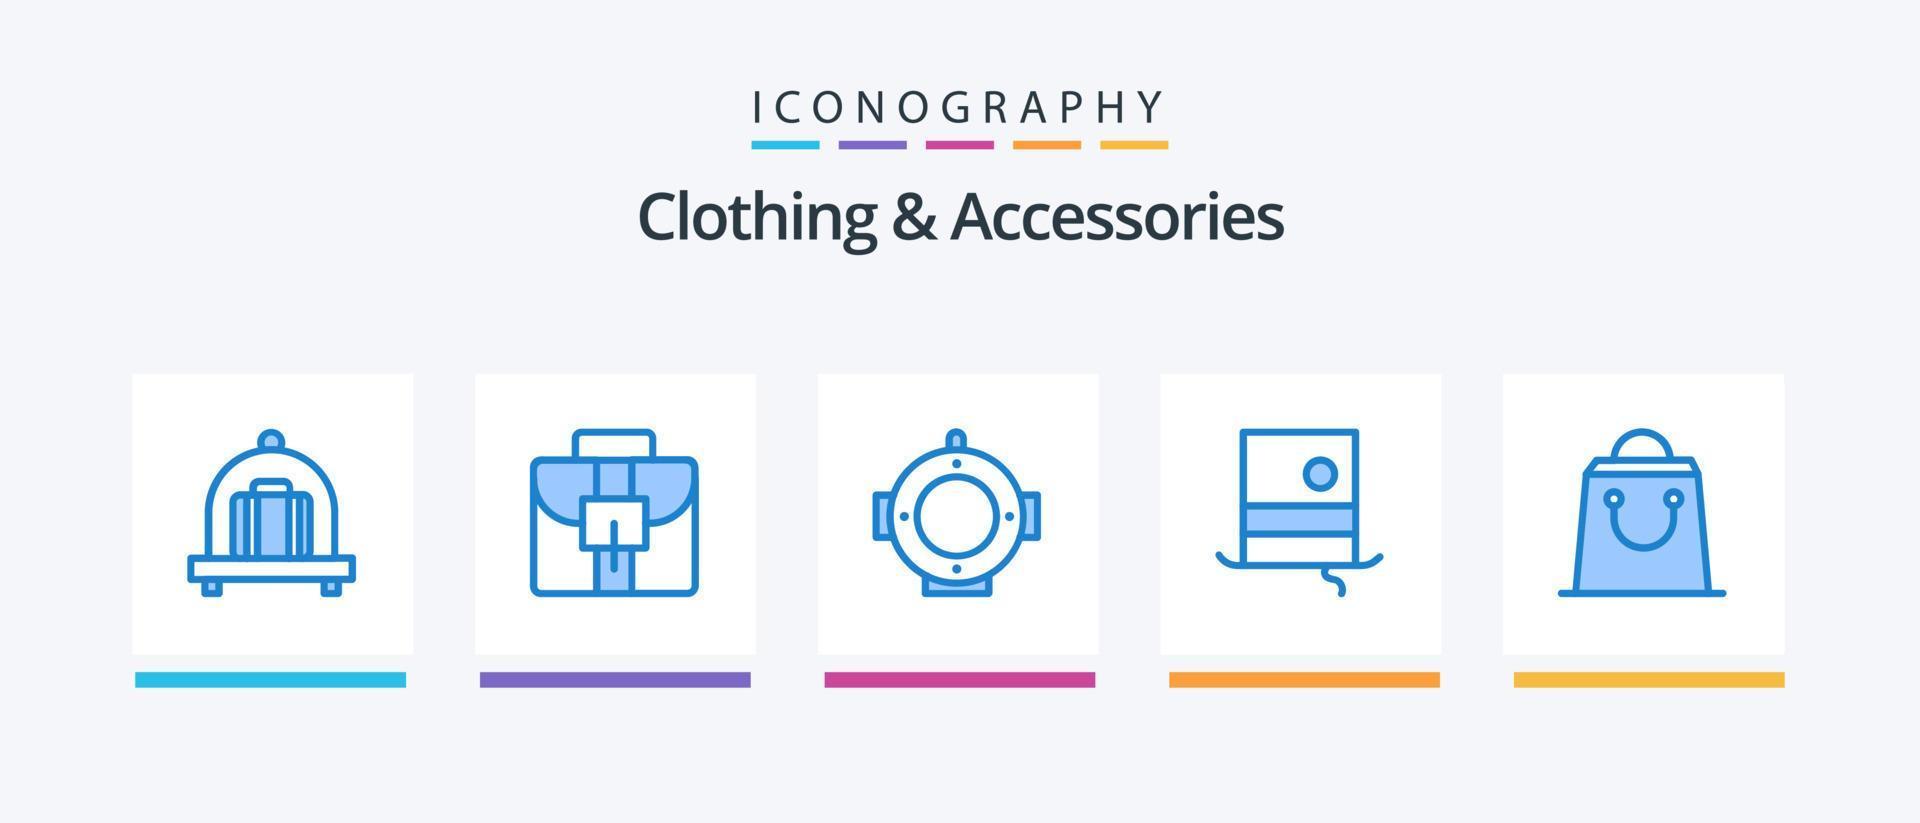 roupas e acessórios pacote de ícones azul 5 incluindo . moda. compras. bolsa. design de ícones criativos vetor